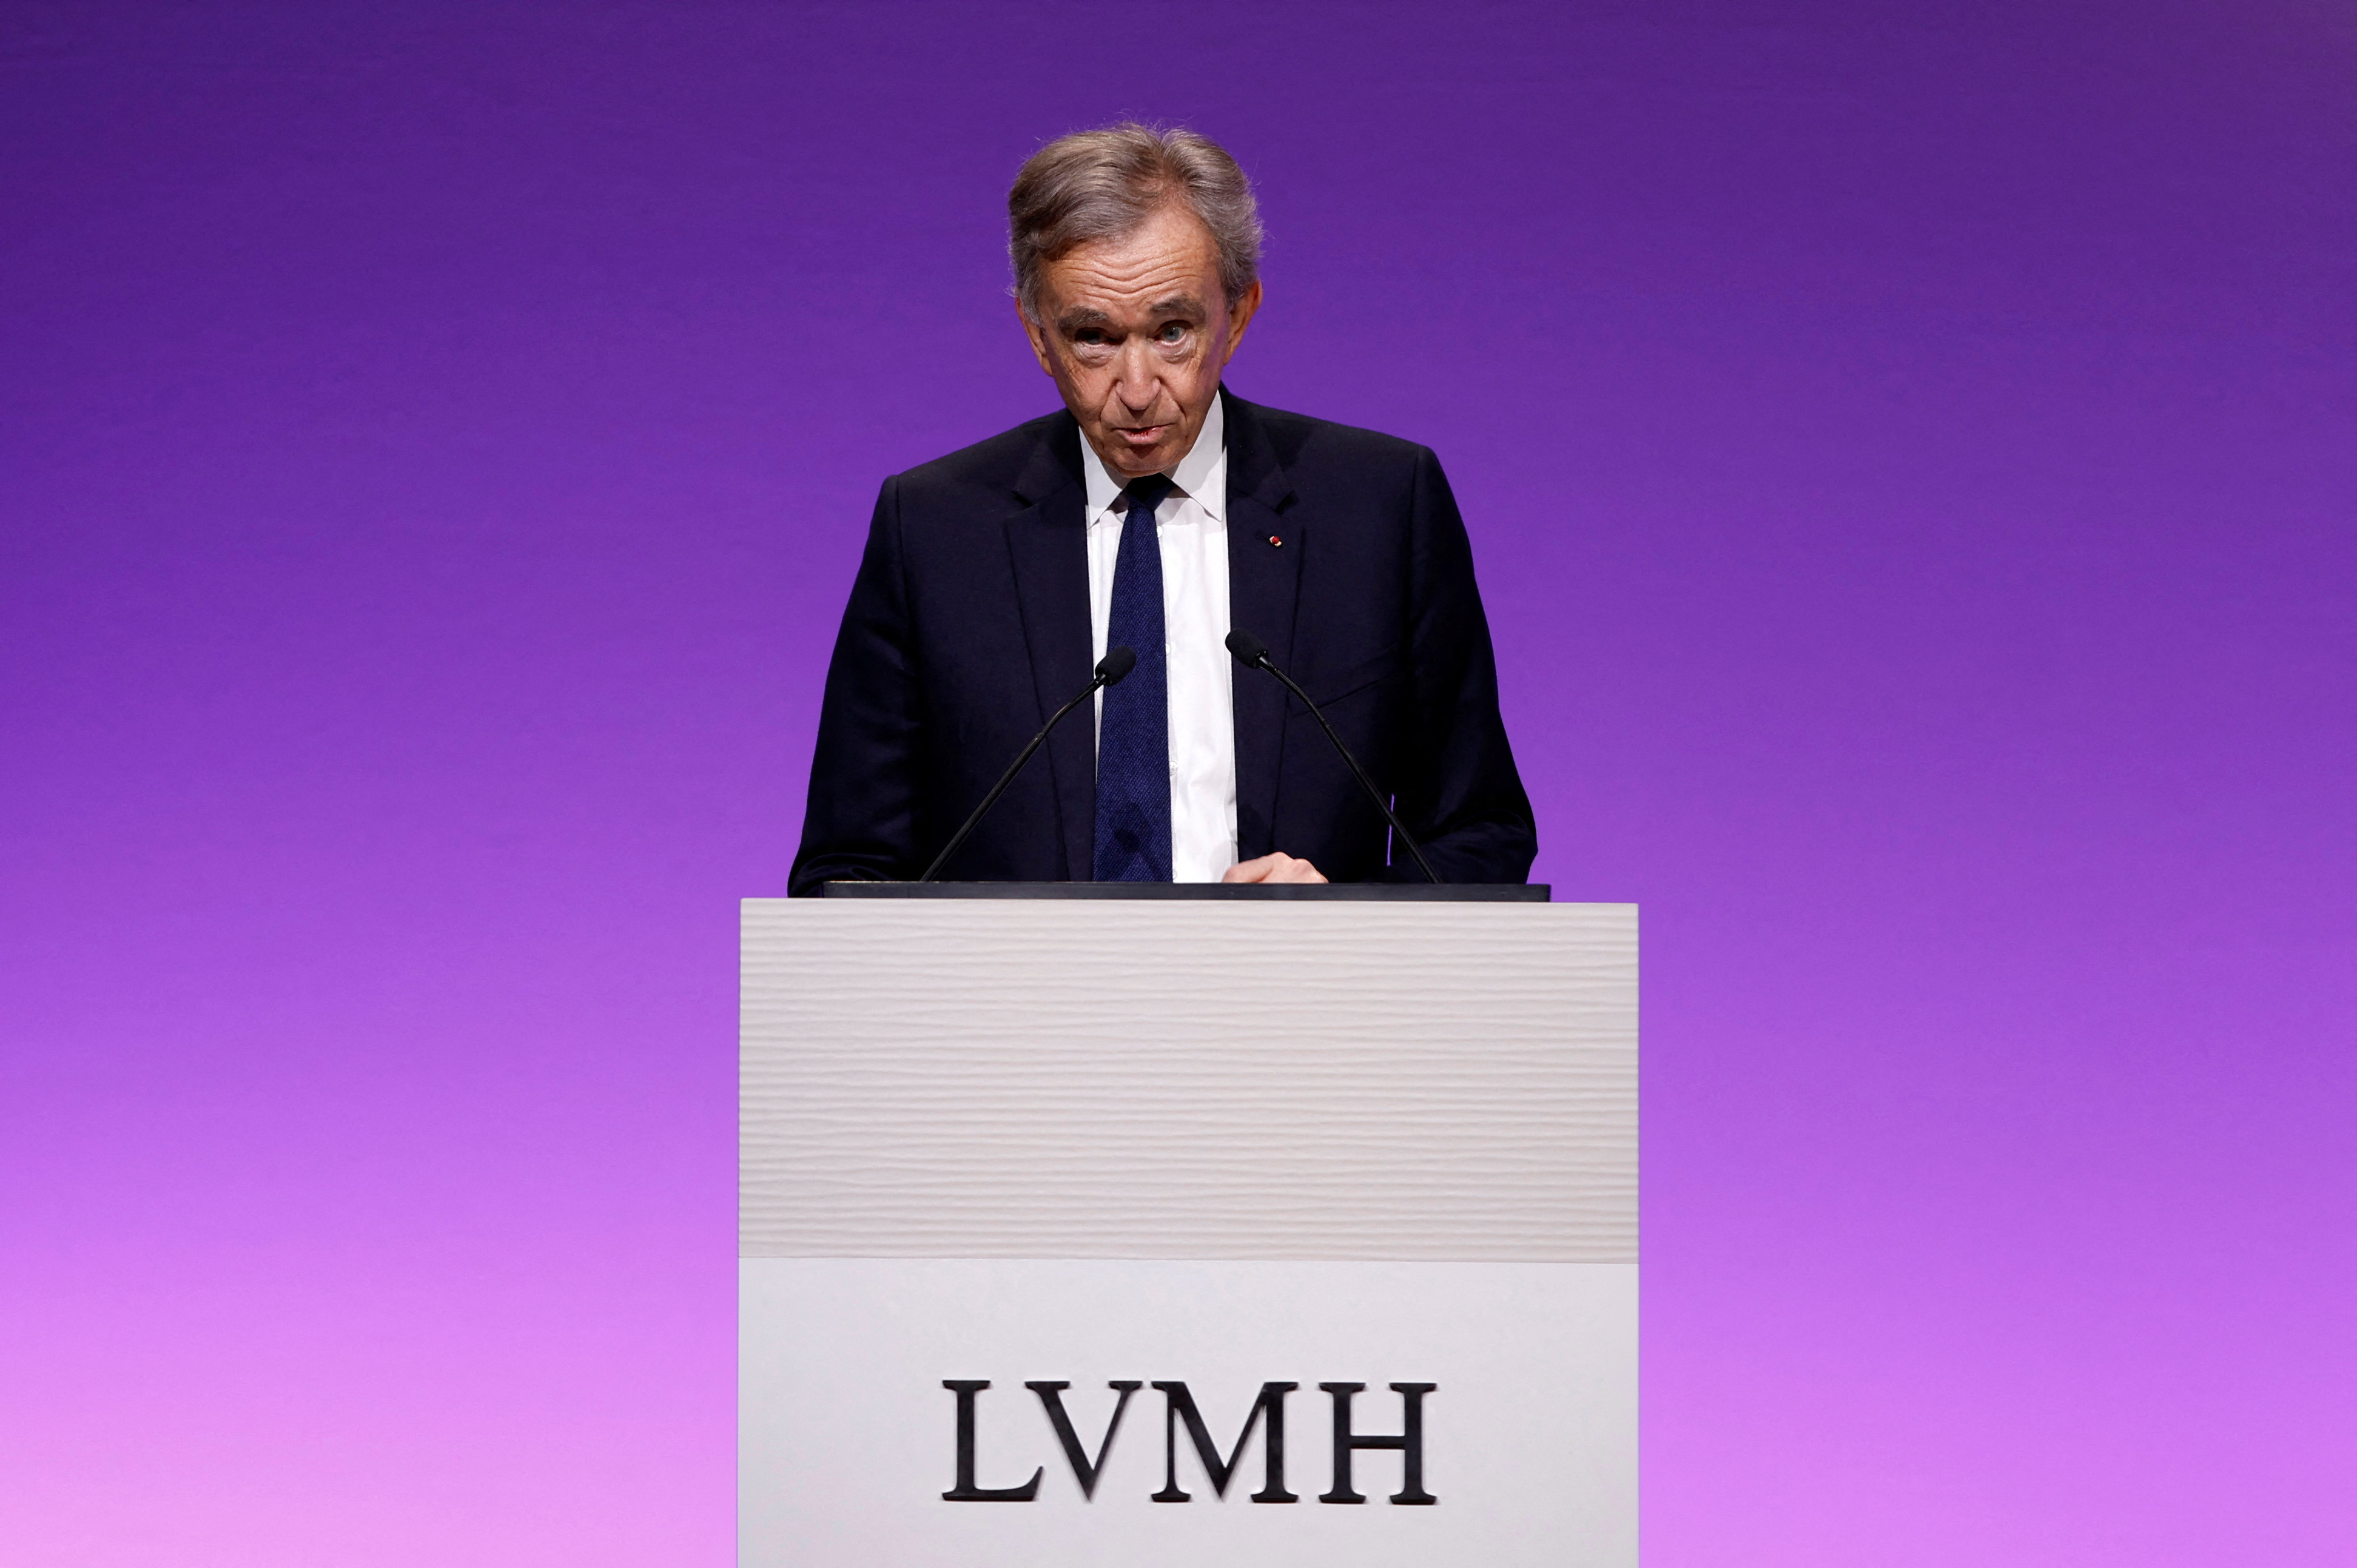 Surging Louis Vuitton Sales Boost LVMH Despite Pandemic Woes